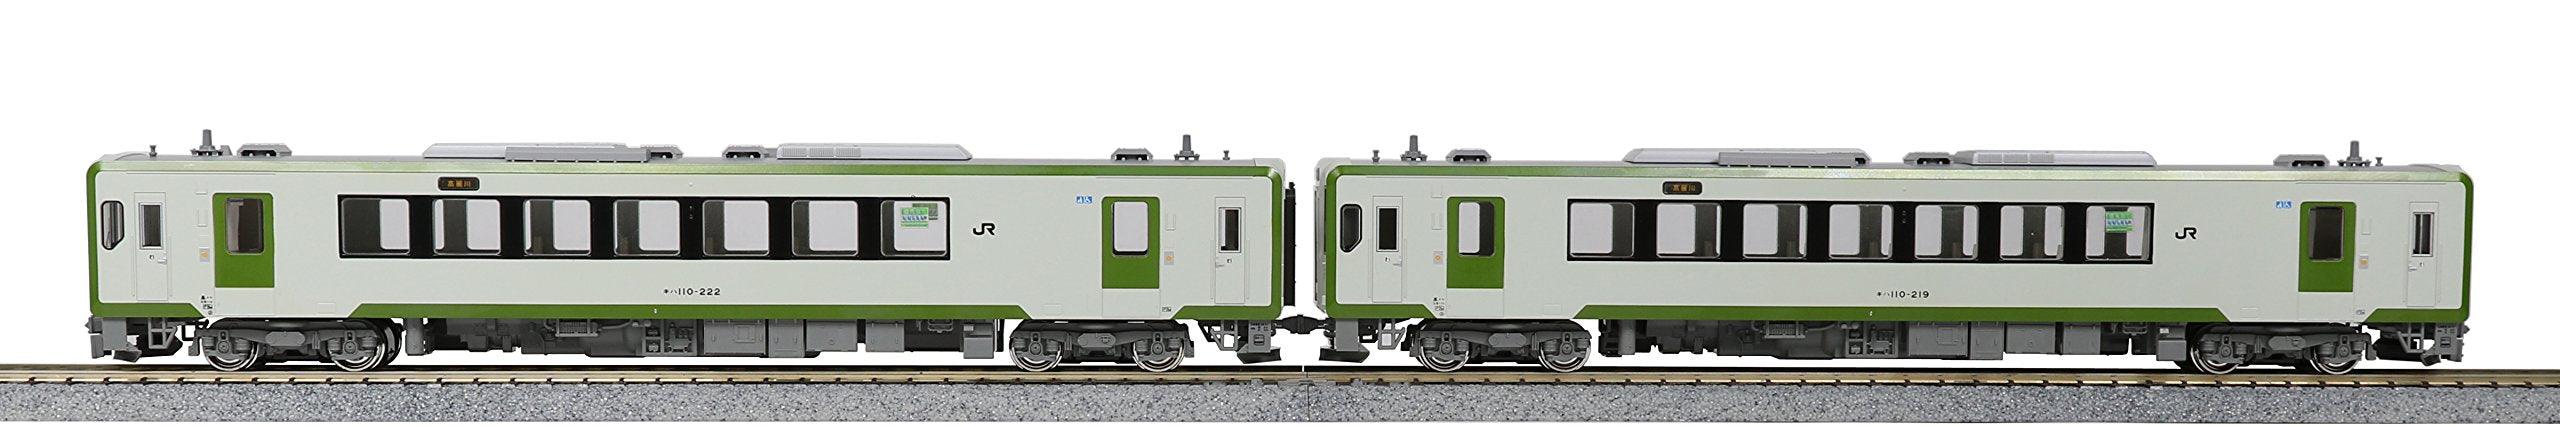 Kato Ho Gauge Kiha 110 200 Series 2-Car Set 3-521 Diesel Railway Model